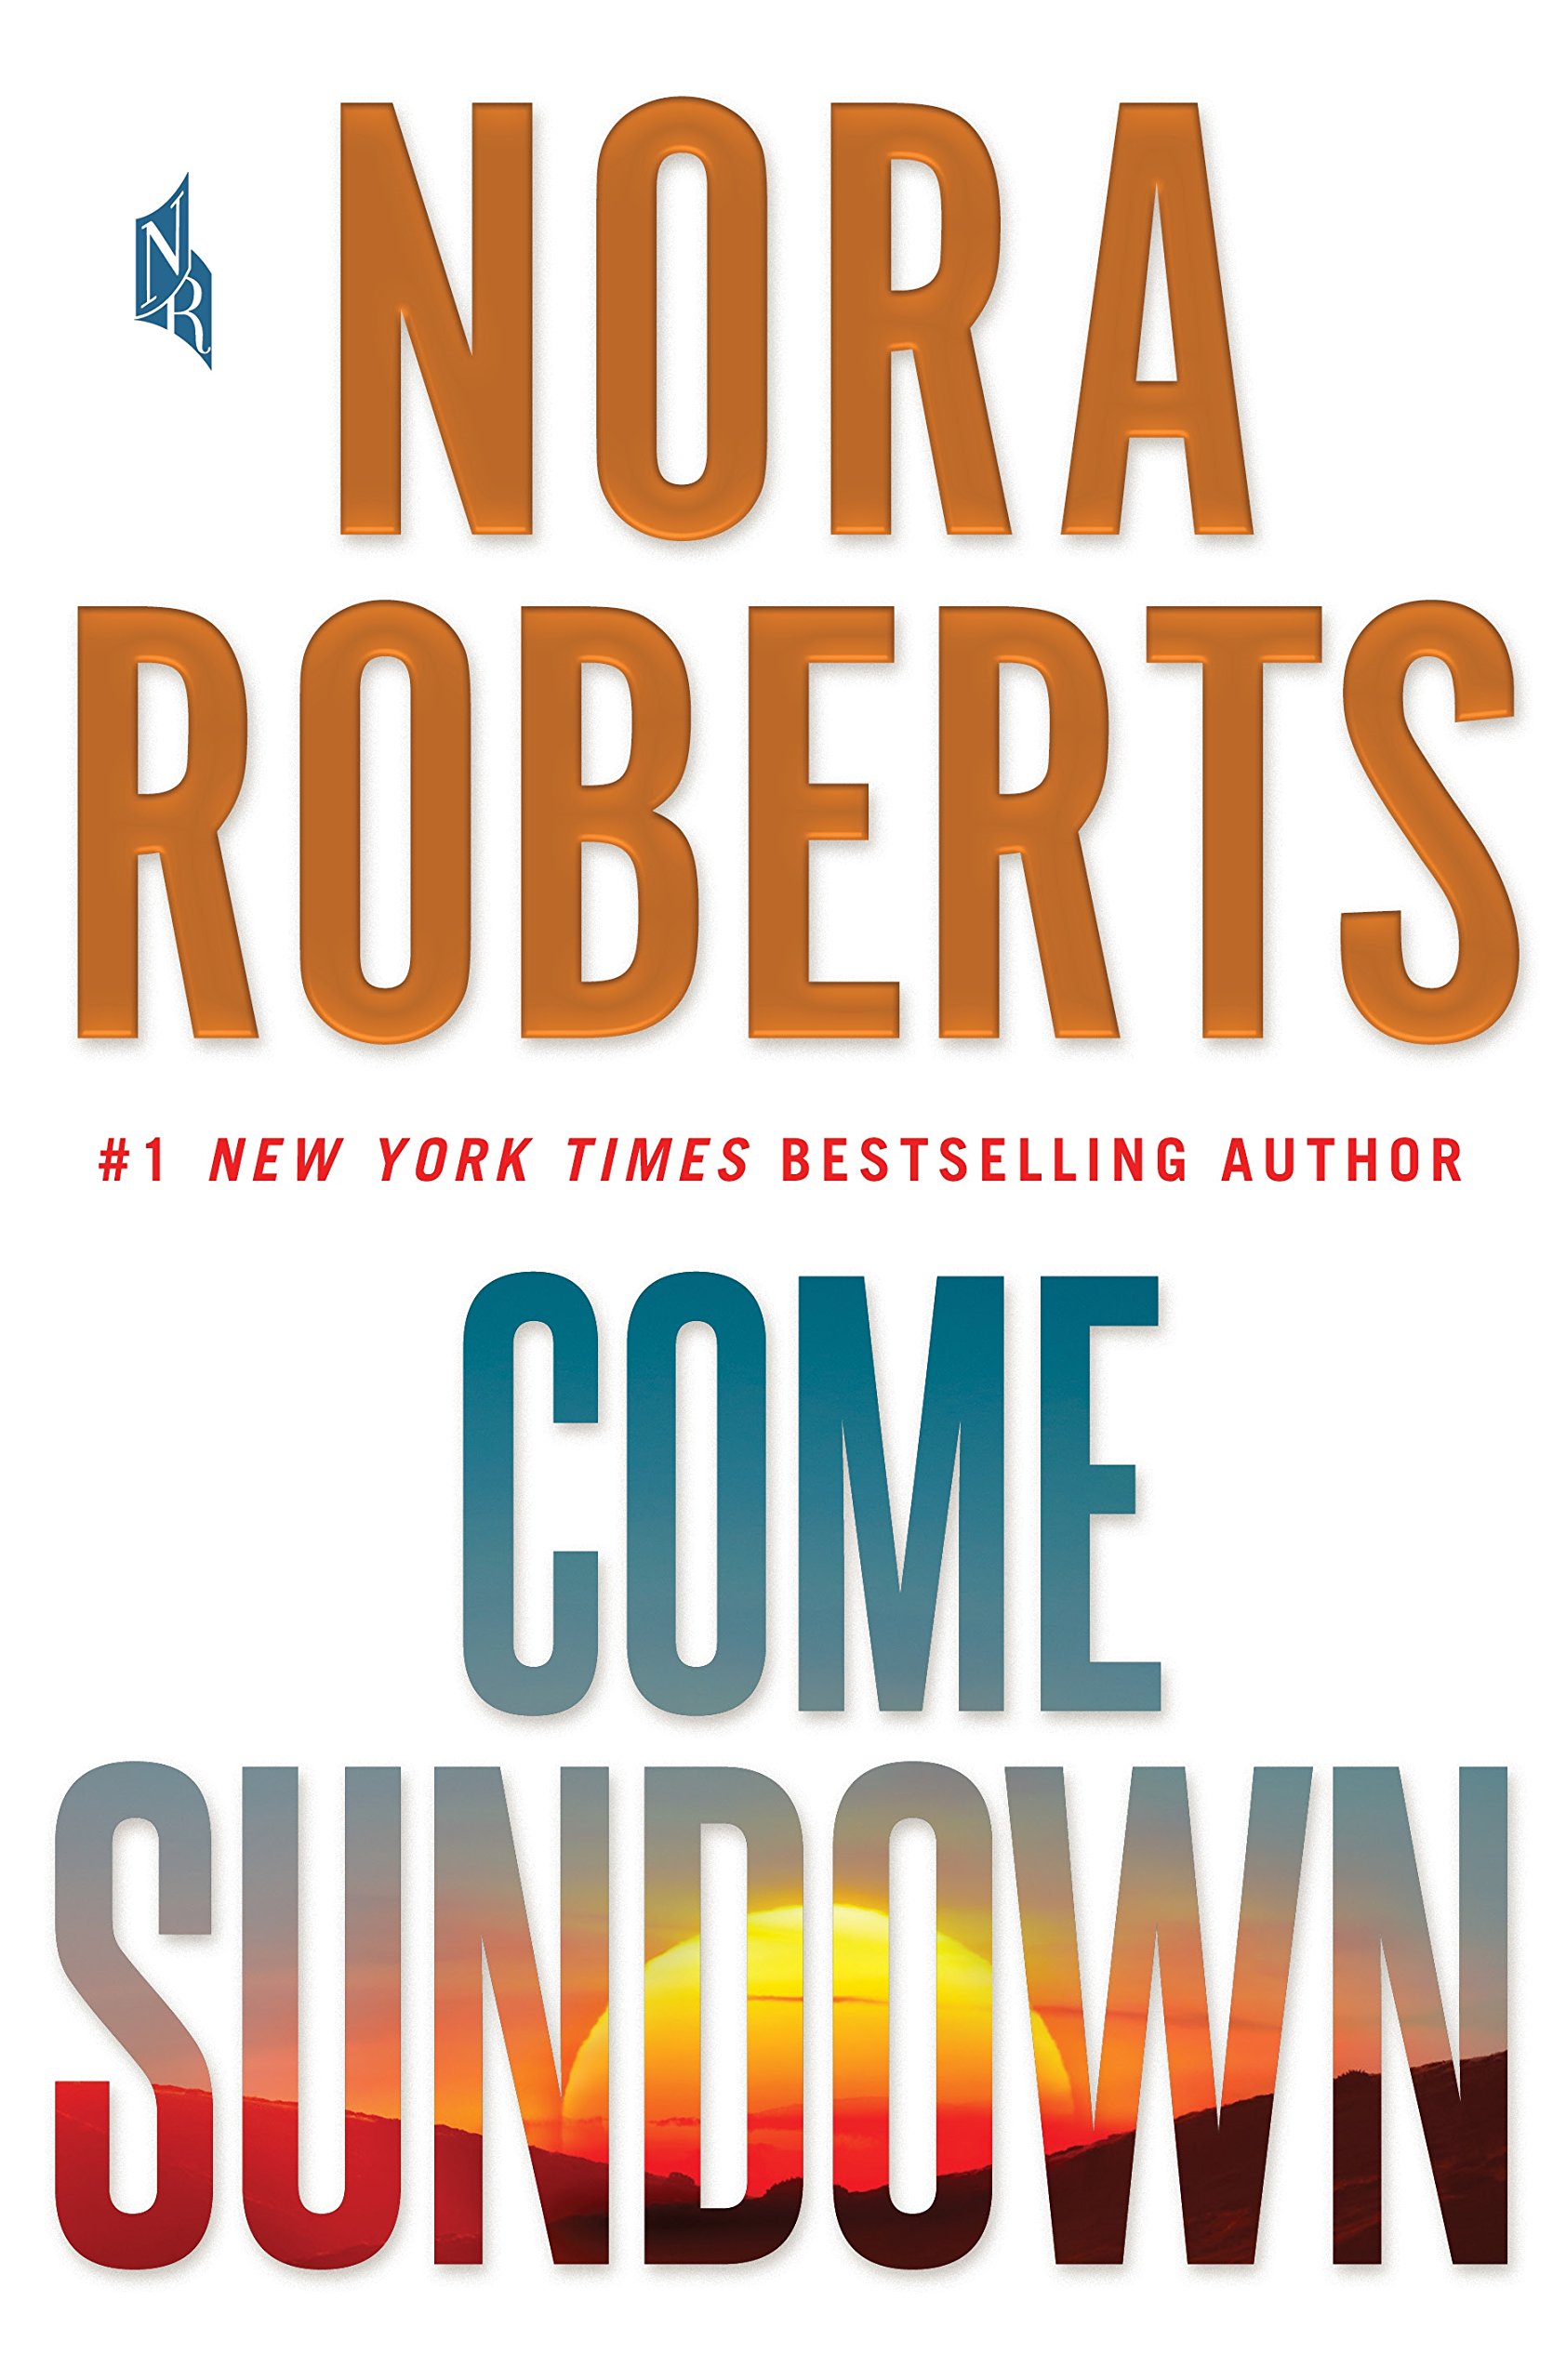 Book Cover Come Sundown: A Novel